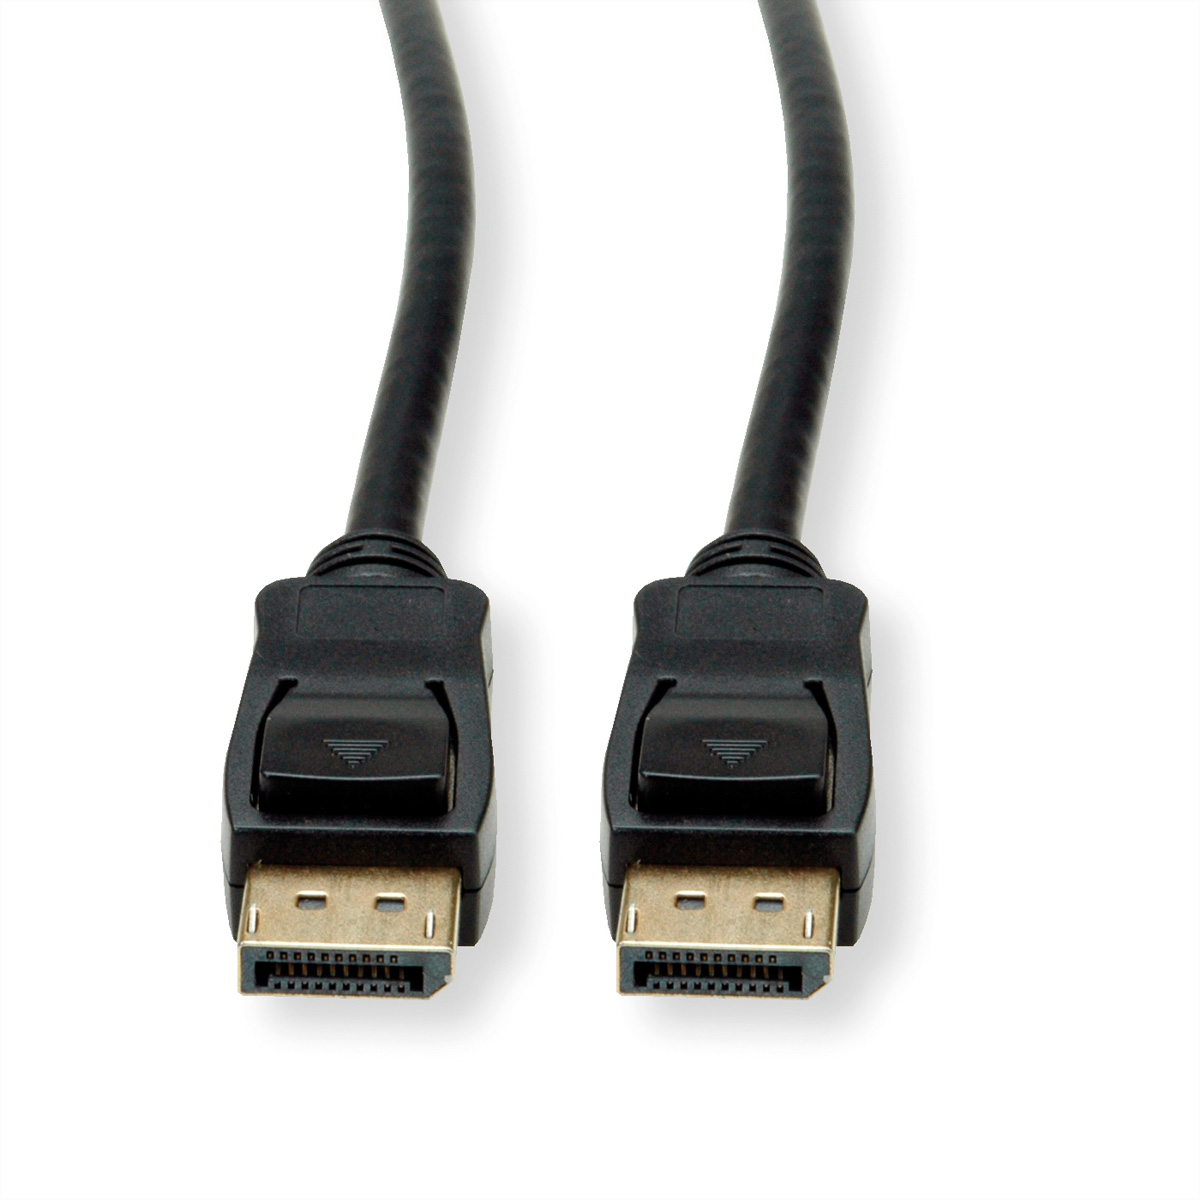 VALUE DisplayPort Kabel, v1.4, m ST, Kabel, 3 DisplayPort DP - ST